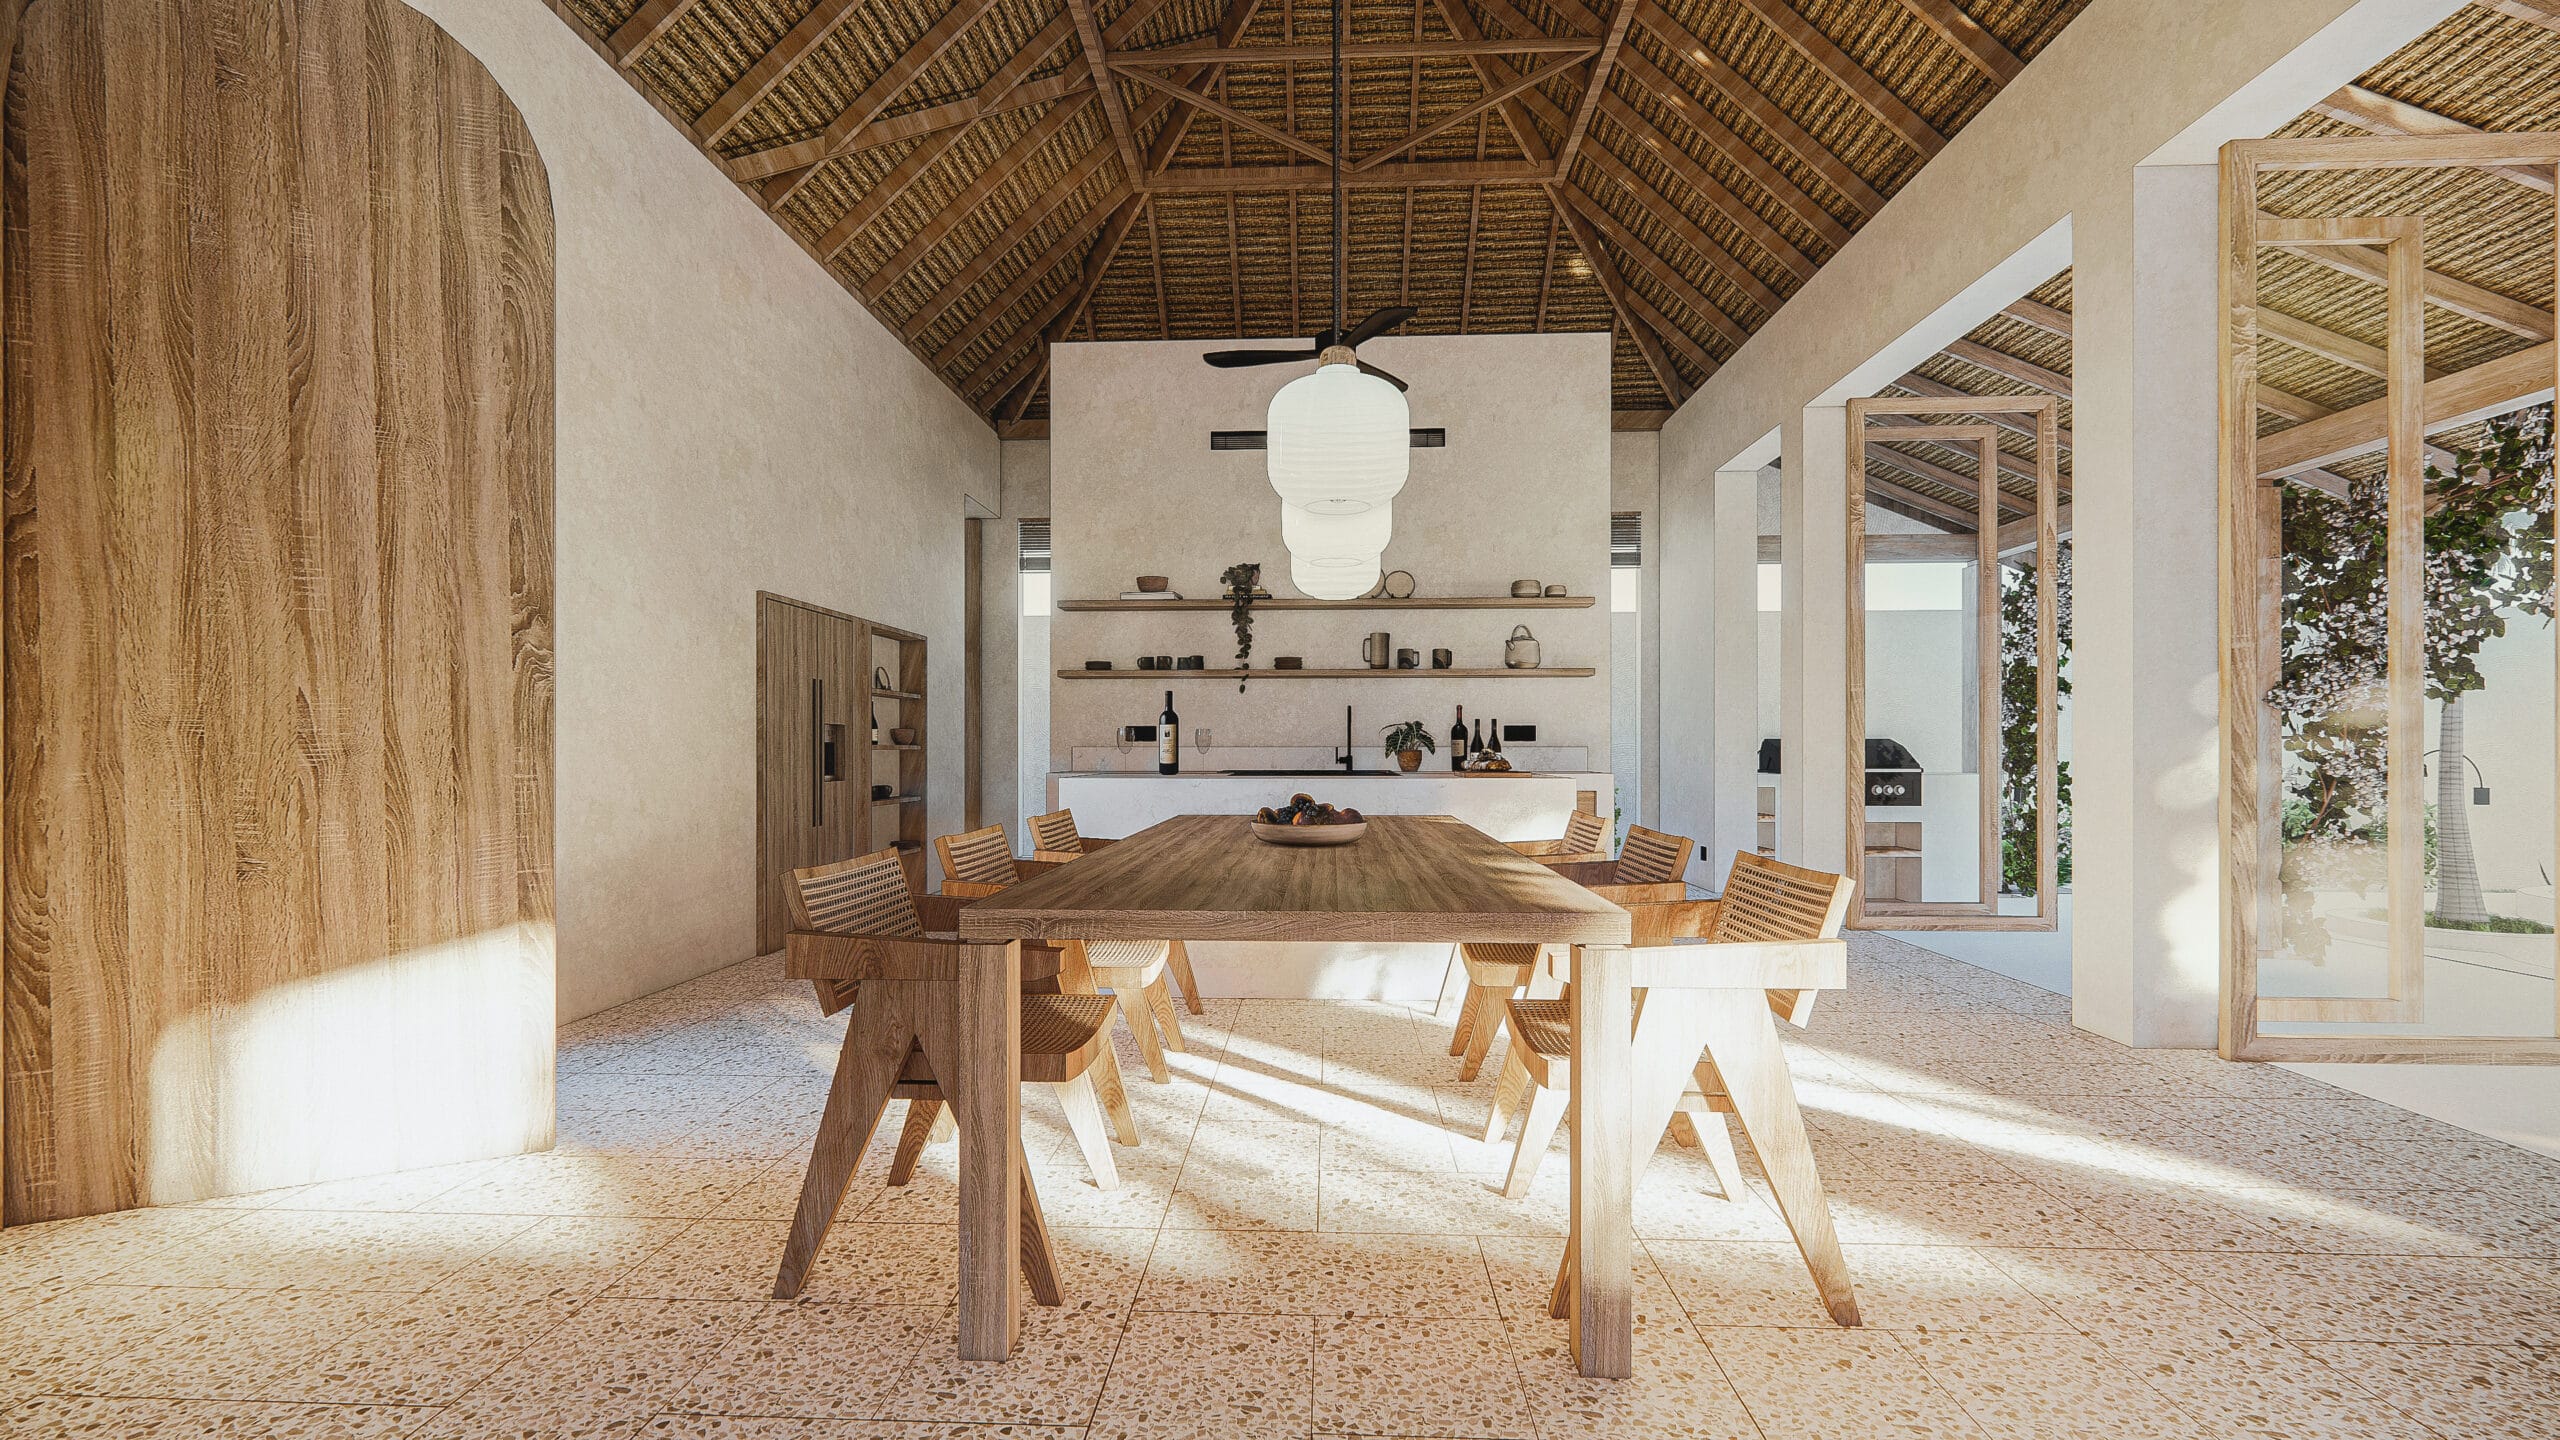 Design Assembly - Michael Utomo Villa - Bali Architect - Interior Design - Bali Villa - Dining Room - Wooden Facade